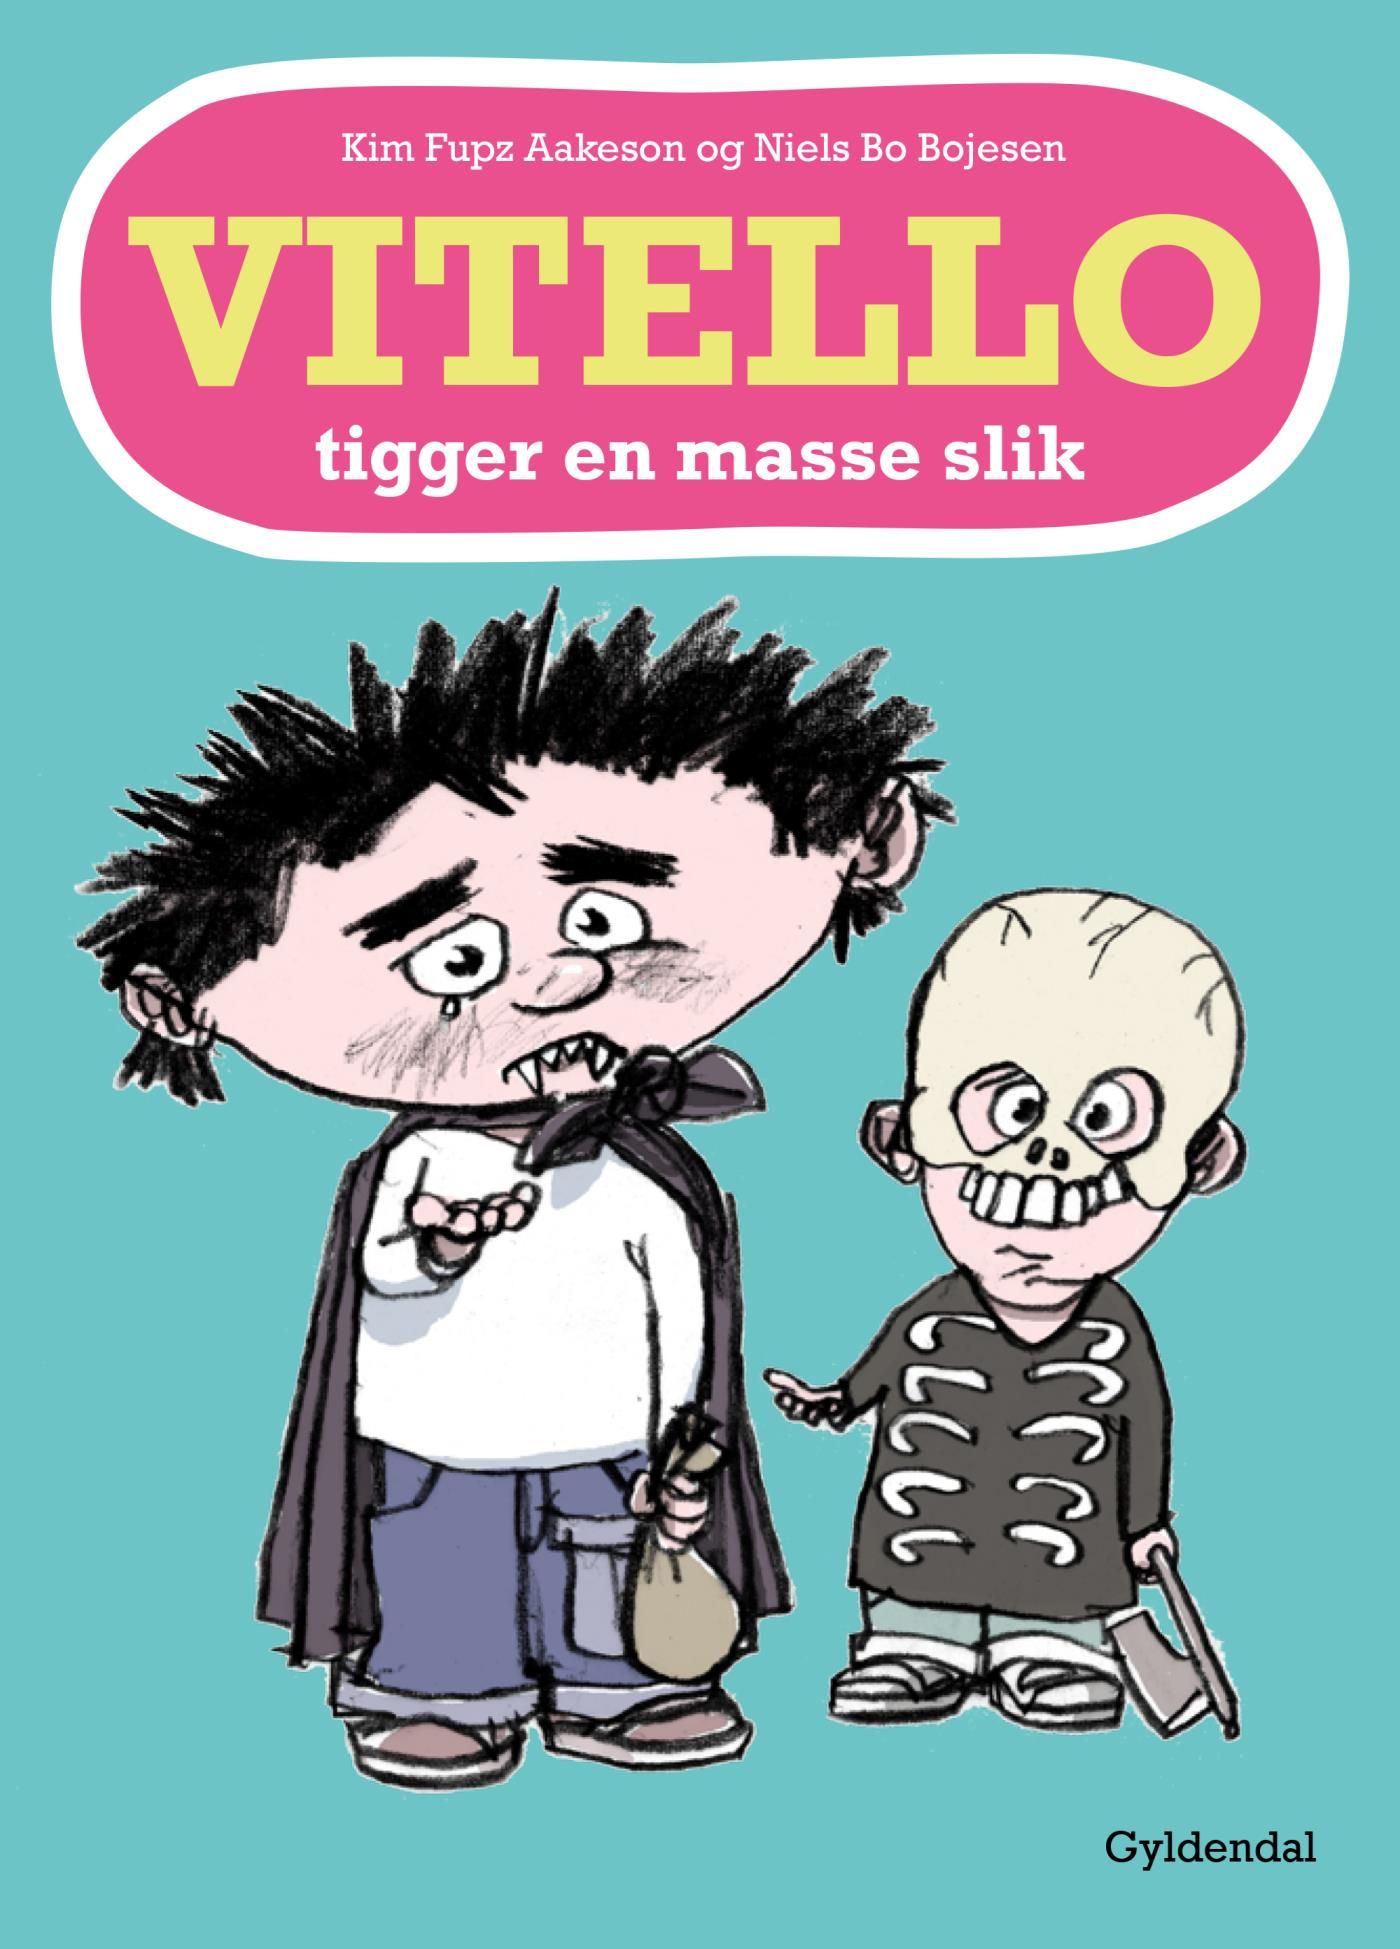 Vitello tigger en masse slik - Lyt&læs, e-bok av Niels Bo Bojesen, Kim Fupz Aakeson